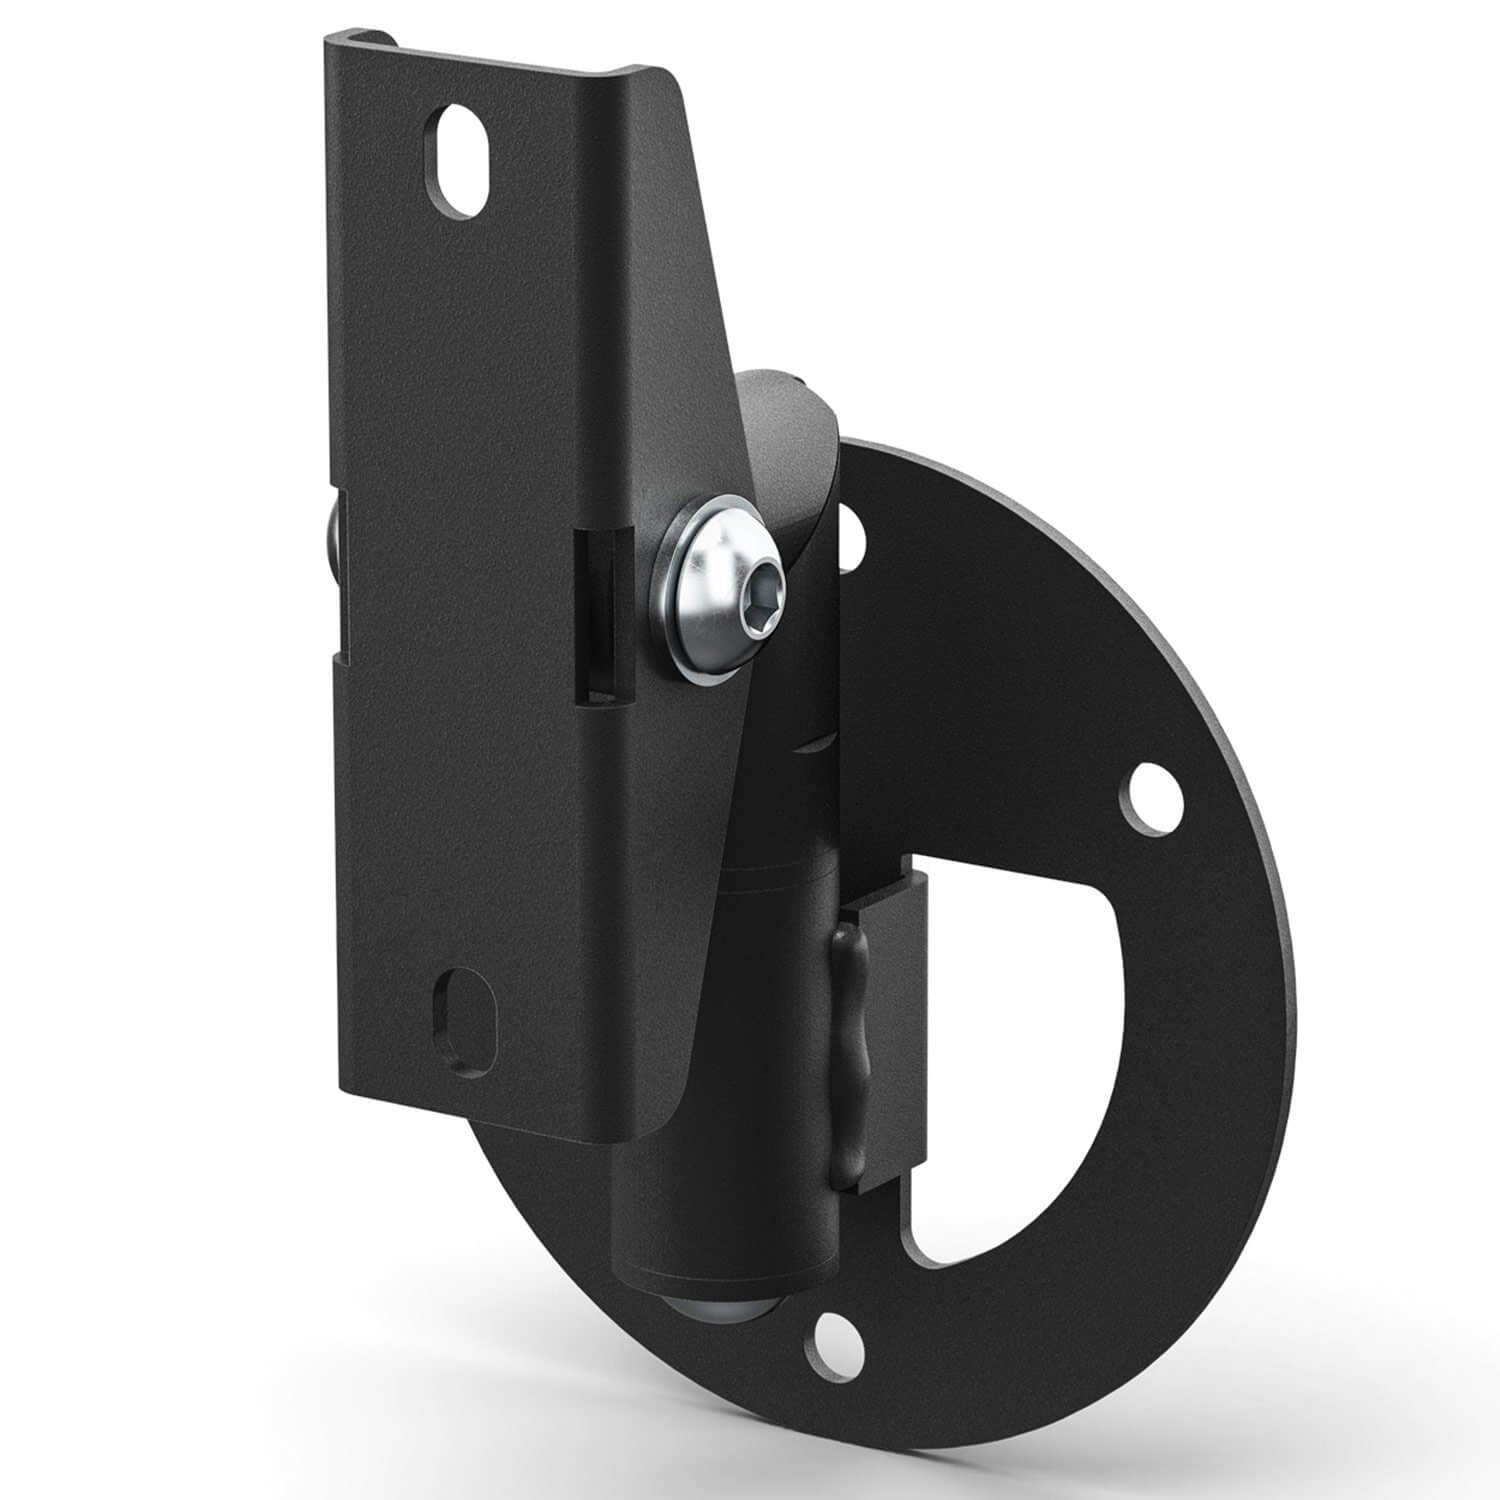 Bose  DesignMax Pan & Tilt Bracket Small, soporte de giro e inclinación